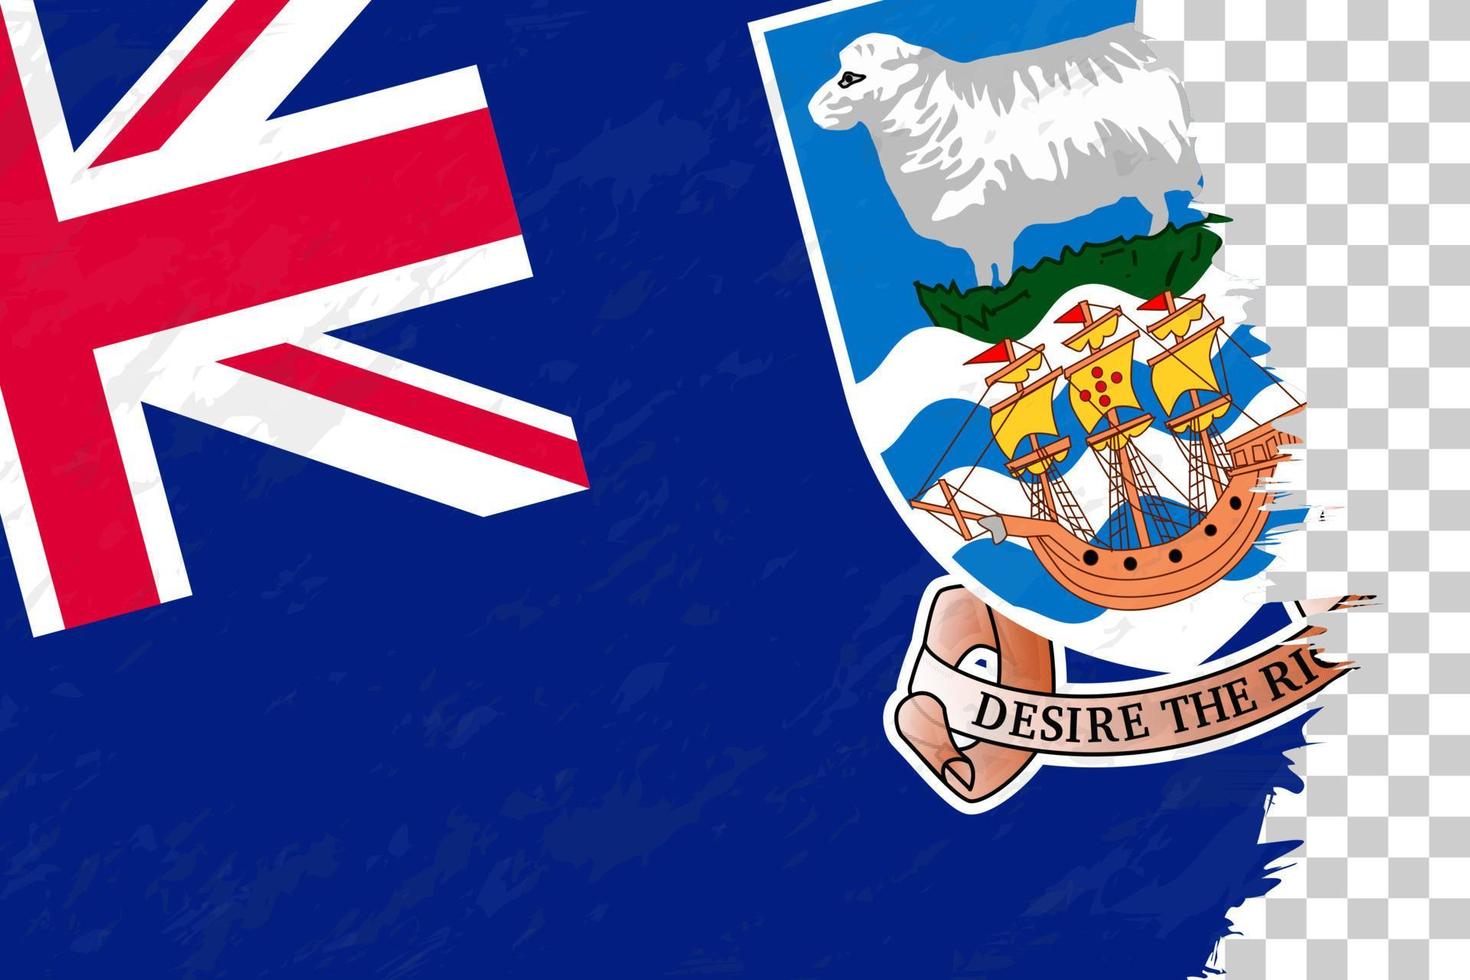 bandiera spazzolata grunge astratto orizzontale delle isole falkland sulla griglia trasparente. vettore